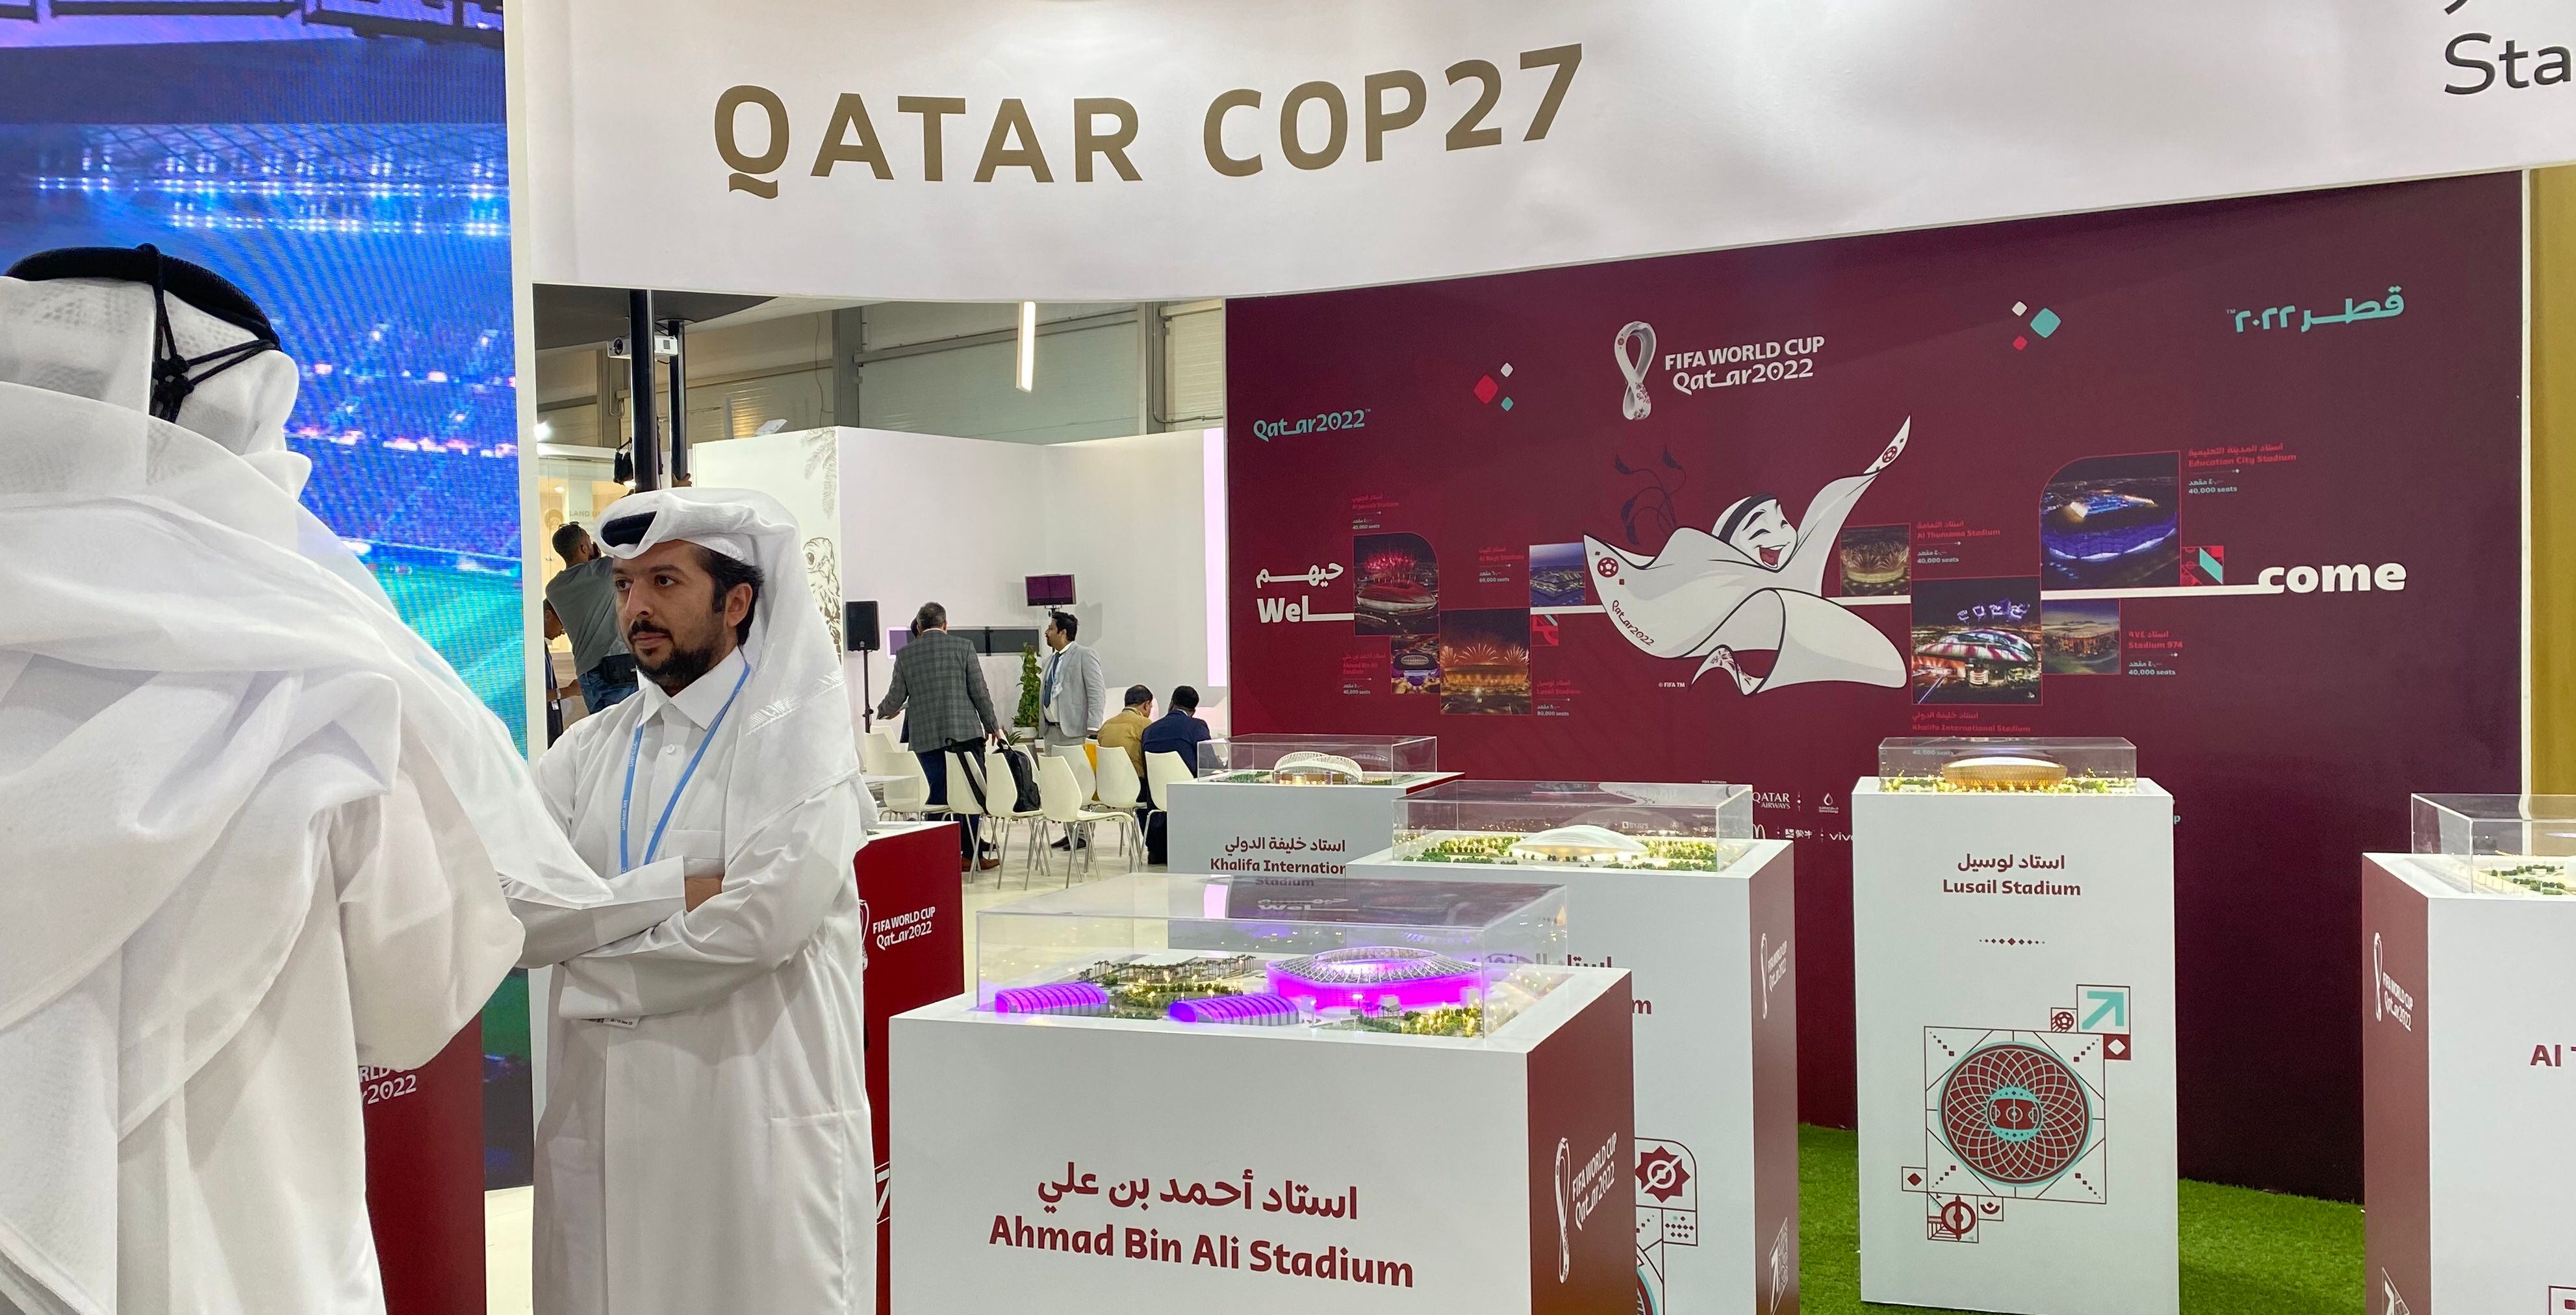 Pabellón de Qatar en la COP27 en Egipto donde se aprecia un amplio despliegue promocional del Mundial 2022. Fotografía: